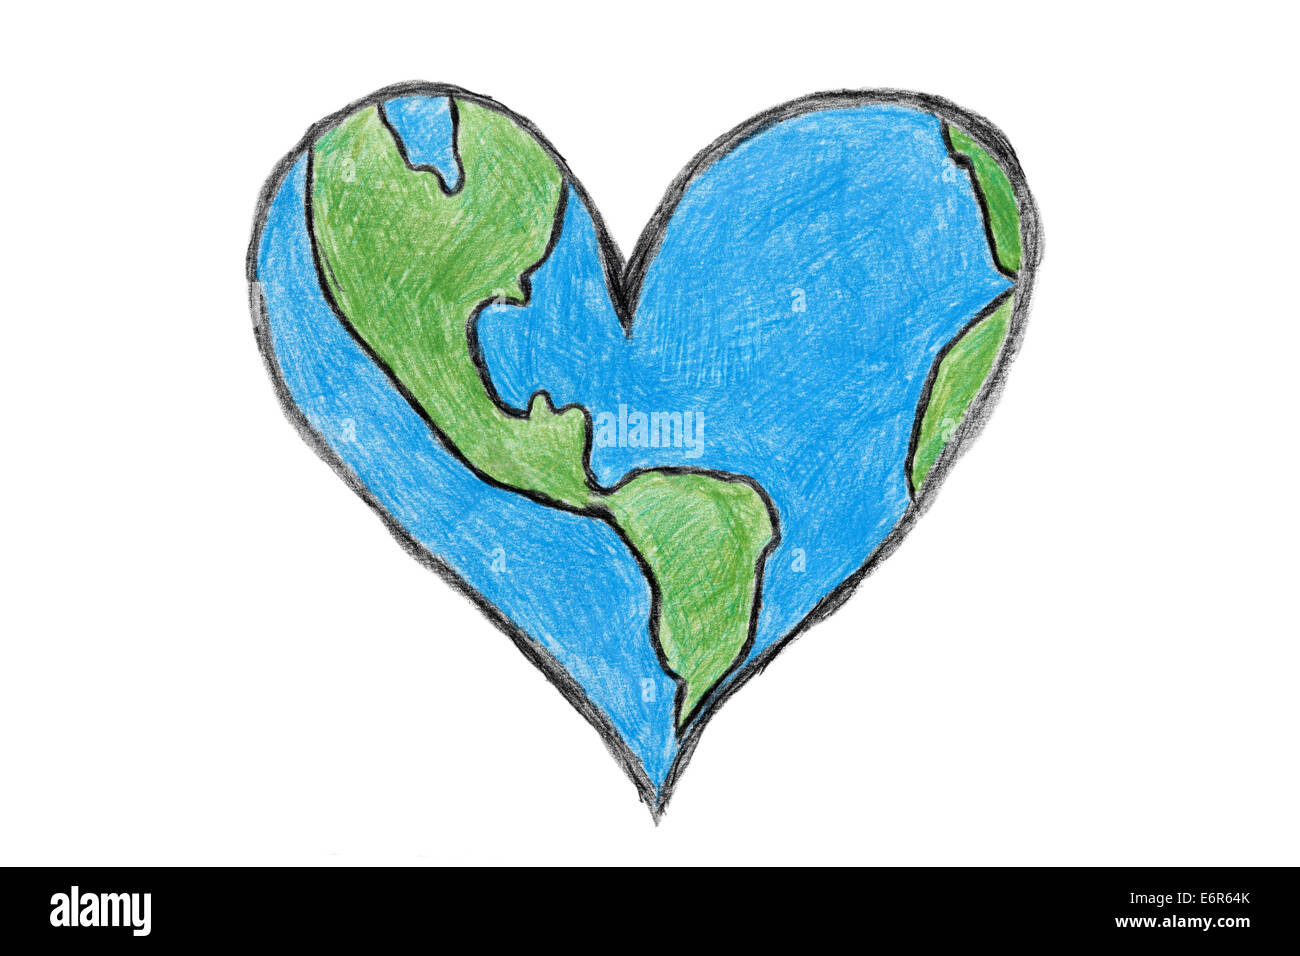 Planeta Tierra en la forma de un corazón de dibujo con lápices de colores. Fondo blanco. Imagen fue dibujada a mano por mí. Foto de stock